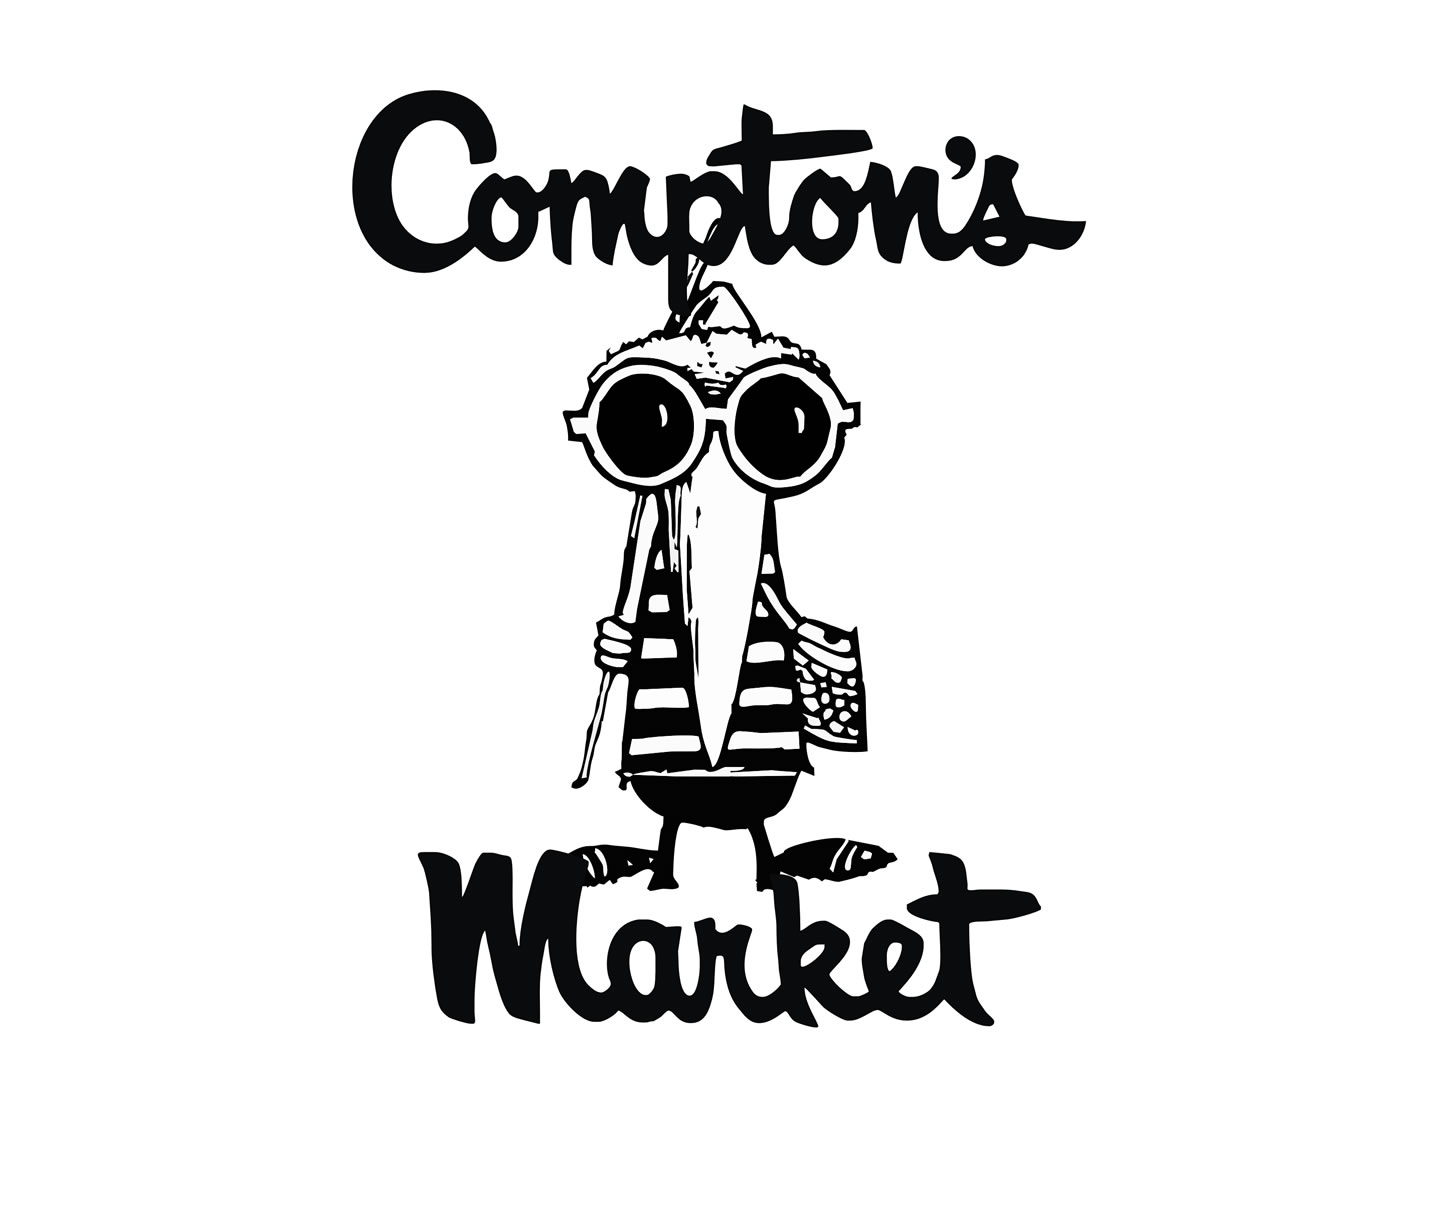 Compton's logo